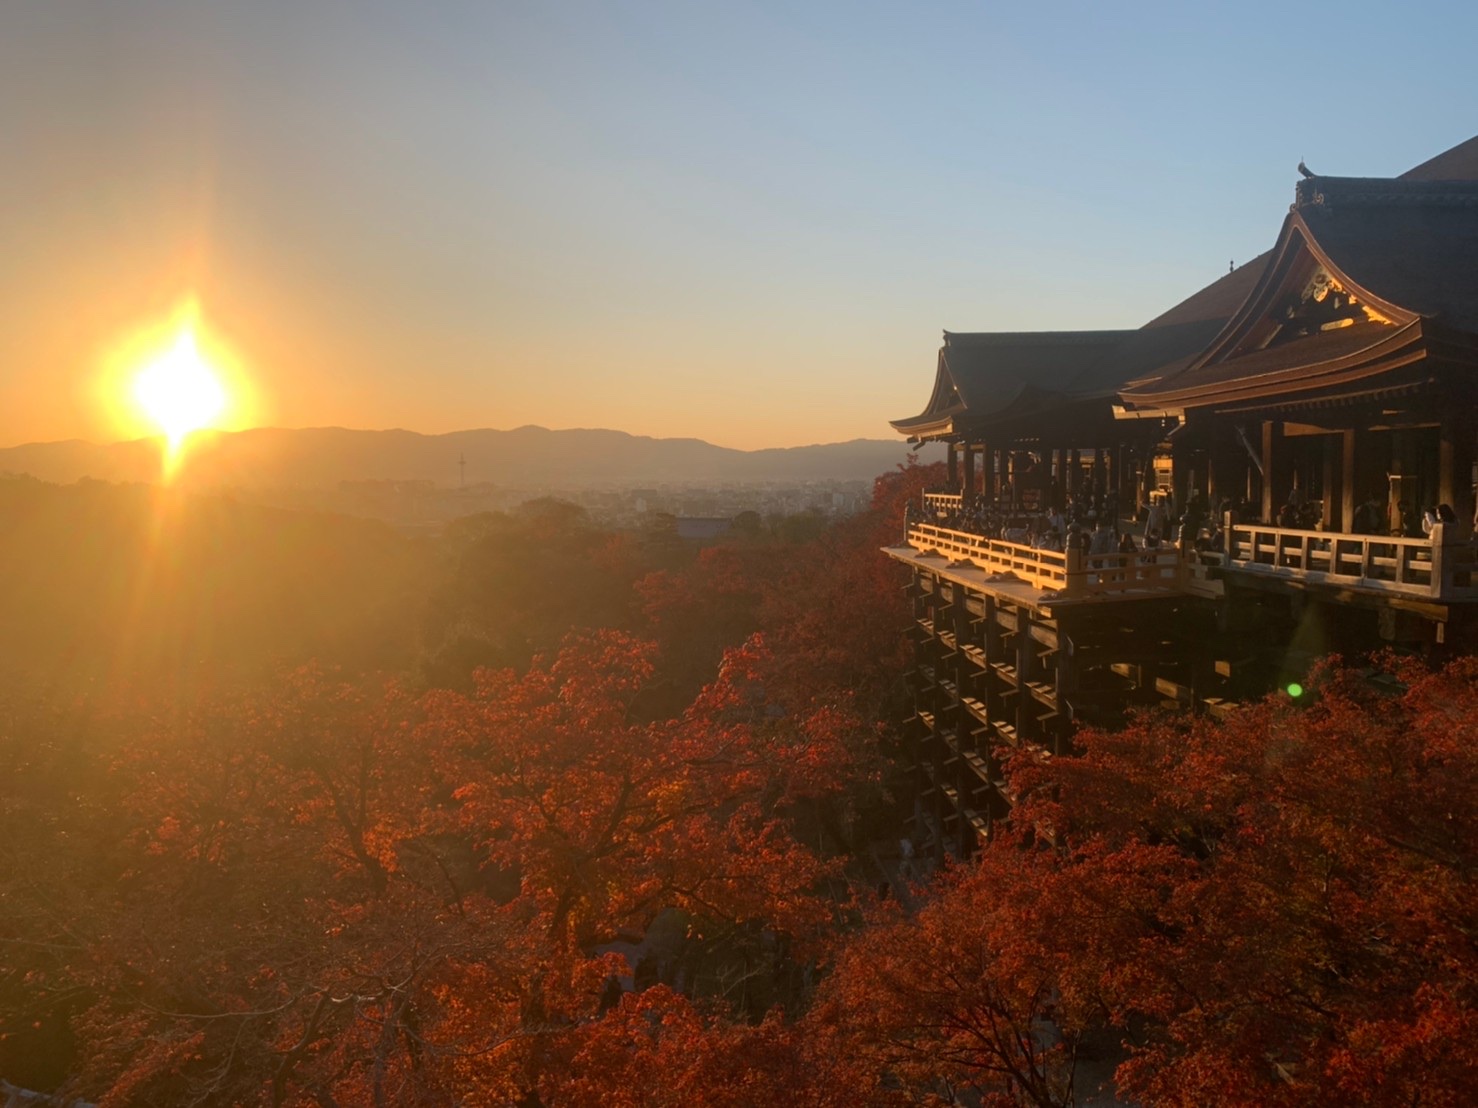 清水寺と紅葉と夕日。心が洗われました。